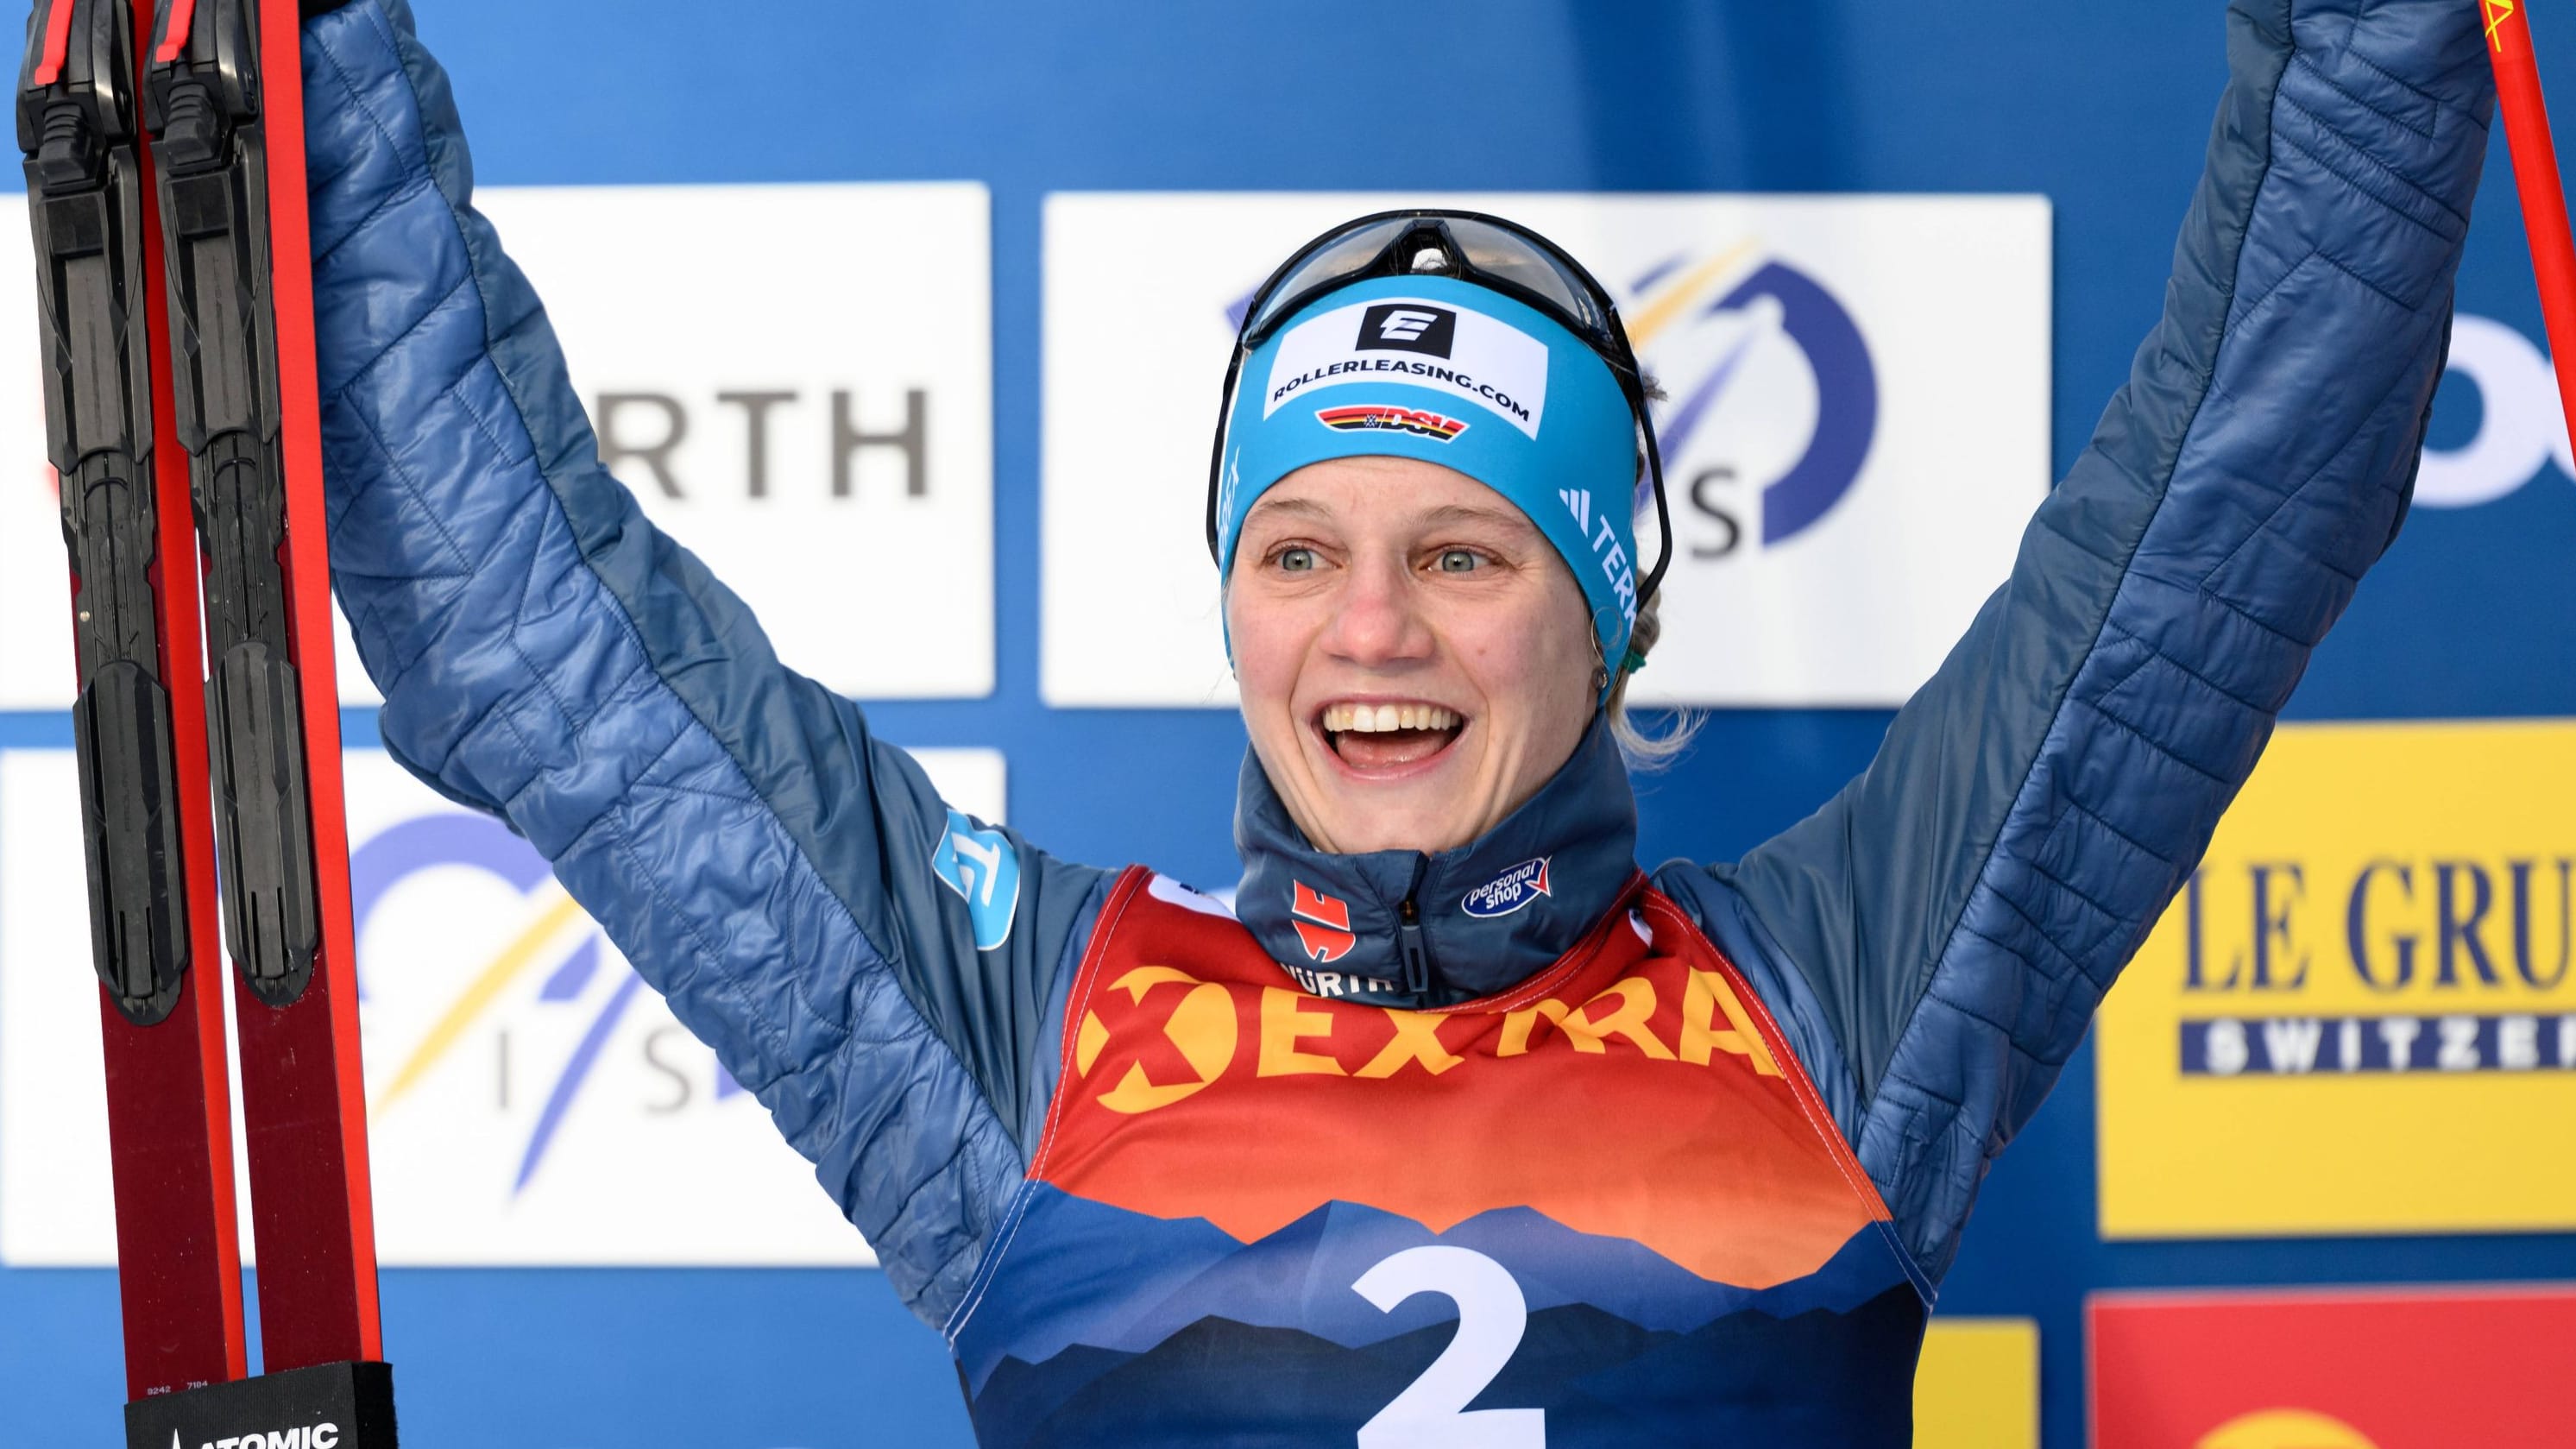 Skilanglauf: Deutsche Olympiasiegerin überrascht bei der Tour de Ski